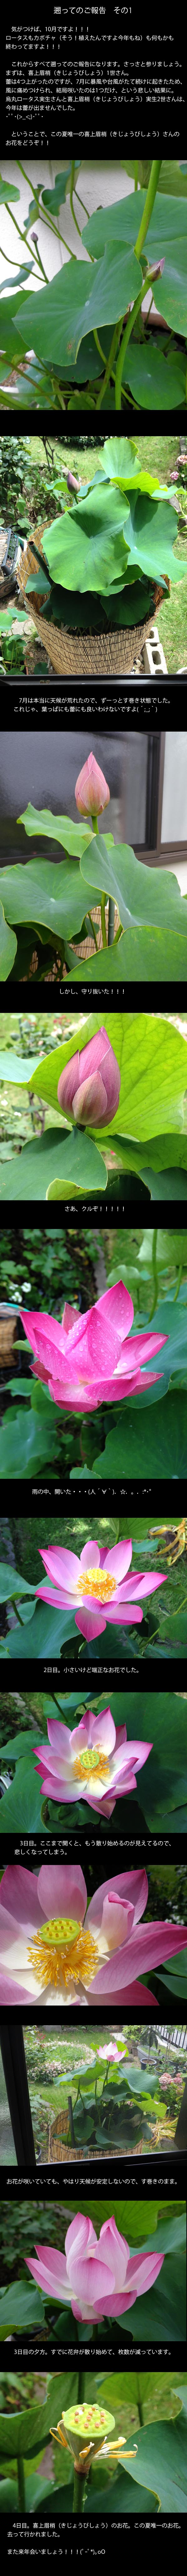 lotus20151013_1